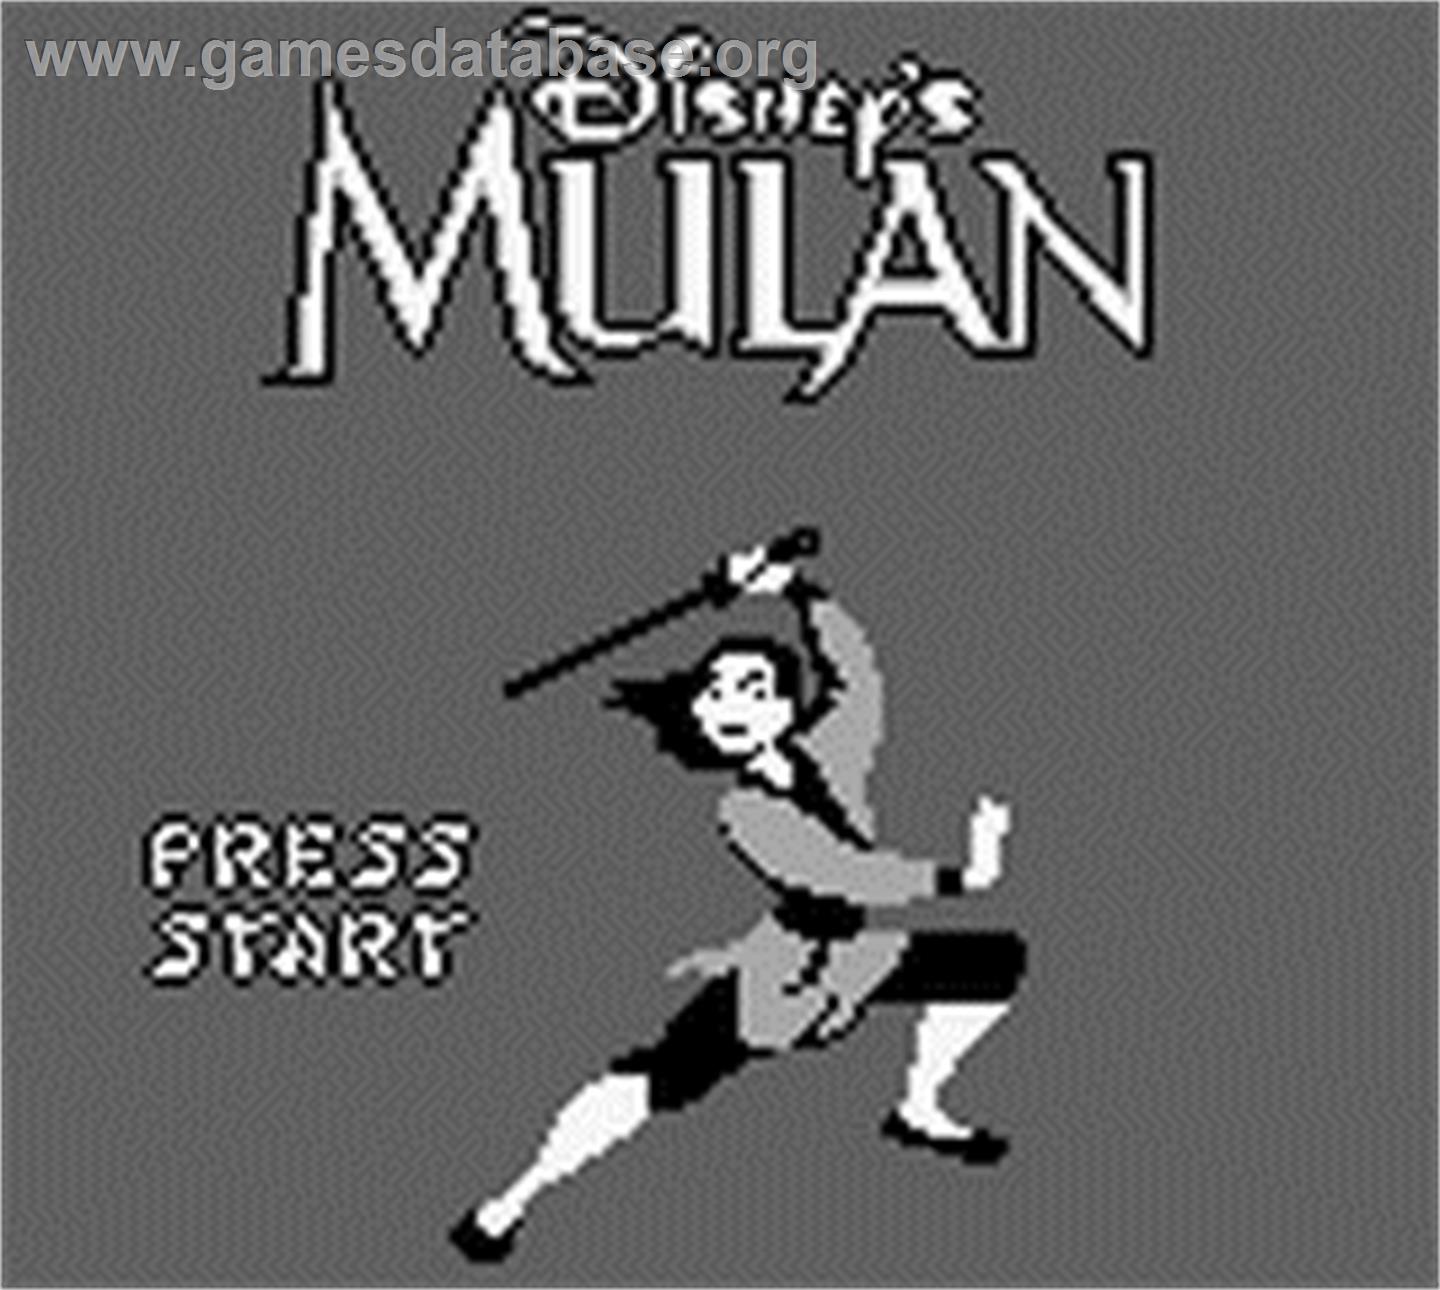 Mulan - Nintendo Game Boy - Artwork - Title Screen